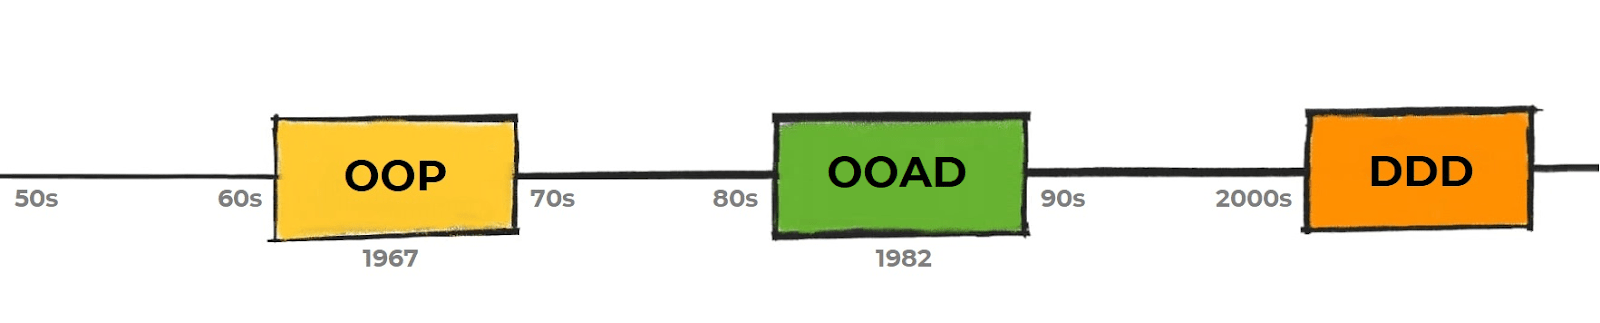 Na ilustração, temos uma linha do tempo com início nos anos 50. Em 1967, temos o marco do surgimento da primeira linguagem orientada a objeto (OOP), passando pelos anos 70 e 80. Em seguida, 1982 temos o OOAD e em 2003 chega o DDD. Mas você terá mais detalhes sobre isso nos próximos parágrafos.